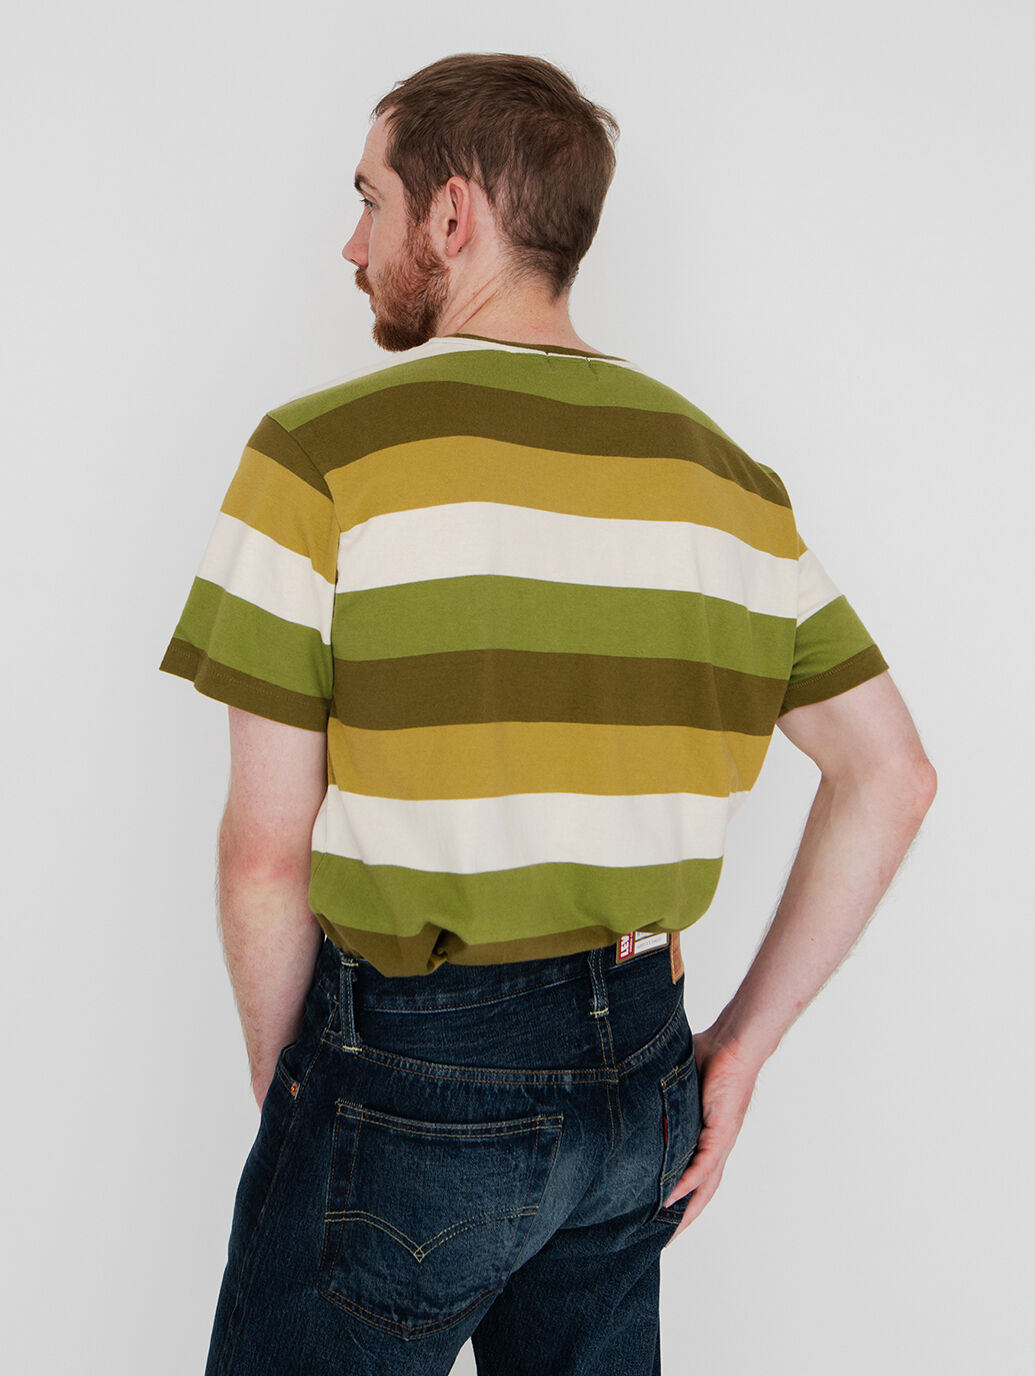 LEVI'S VINTAGE CLOTHING カジュアルシャツ -(M位)なし伸縮性